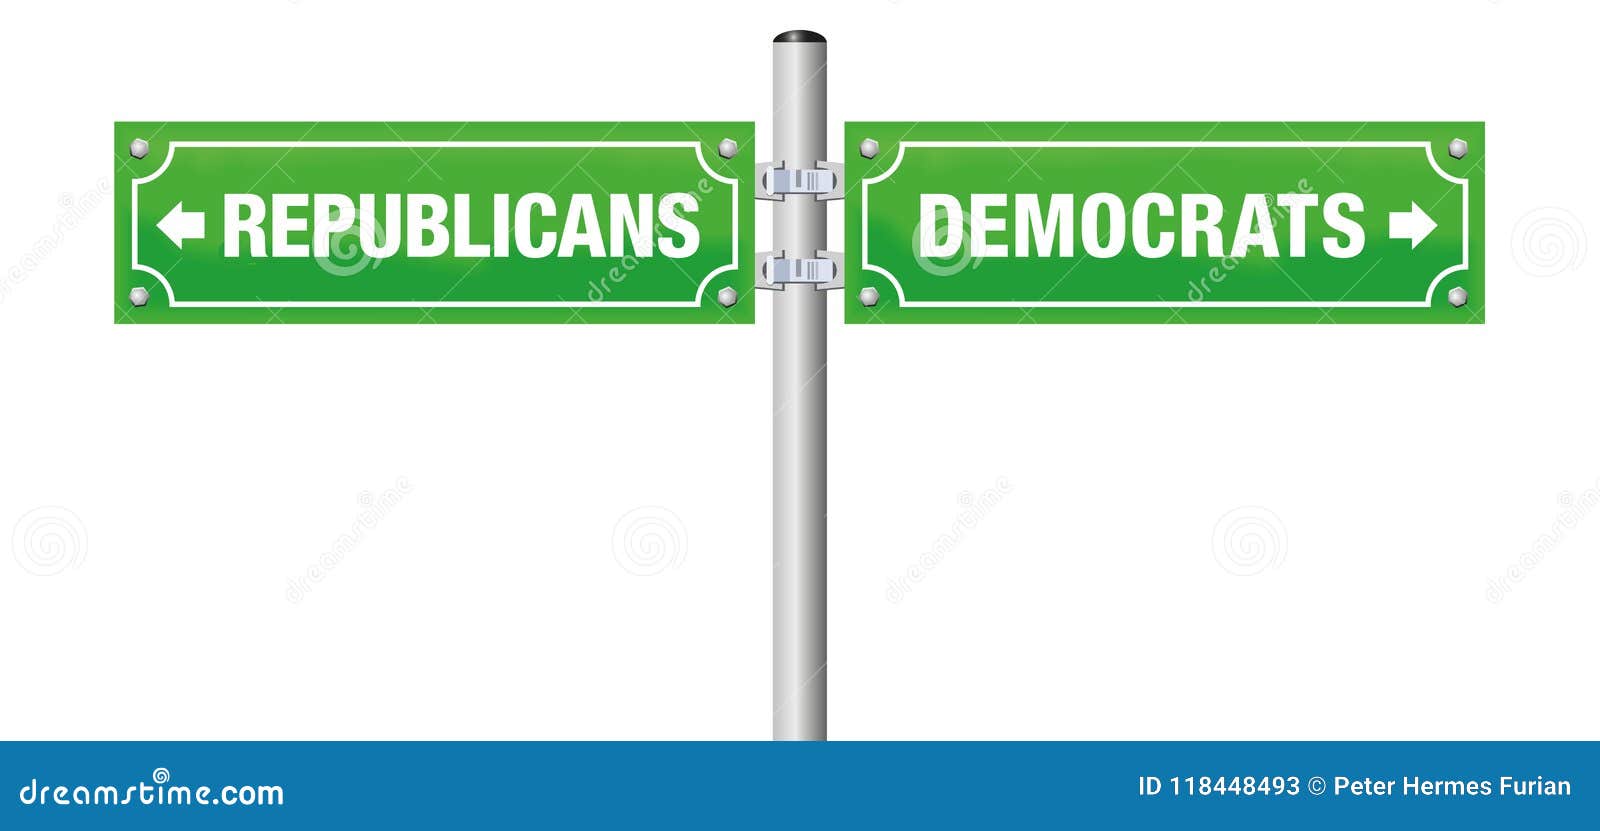 republicans democrats street sign